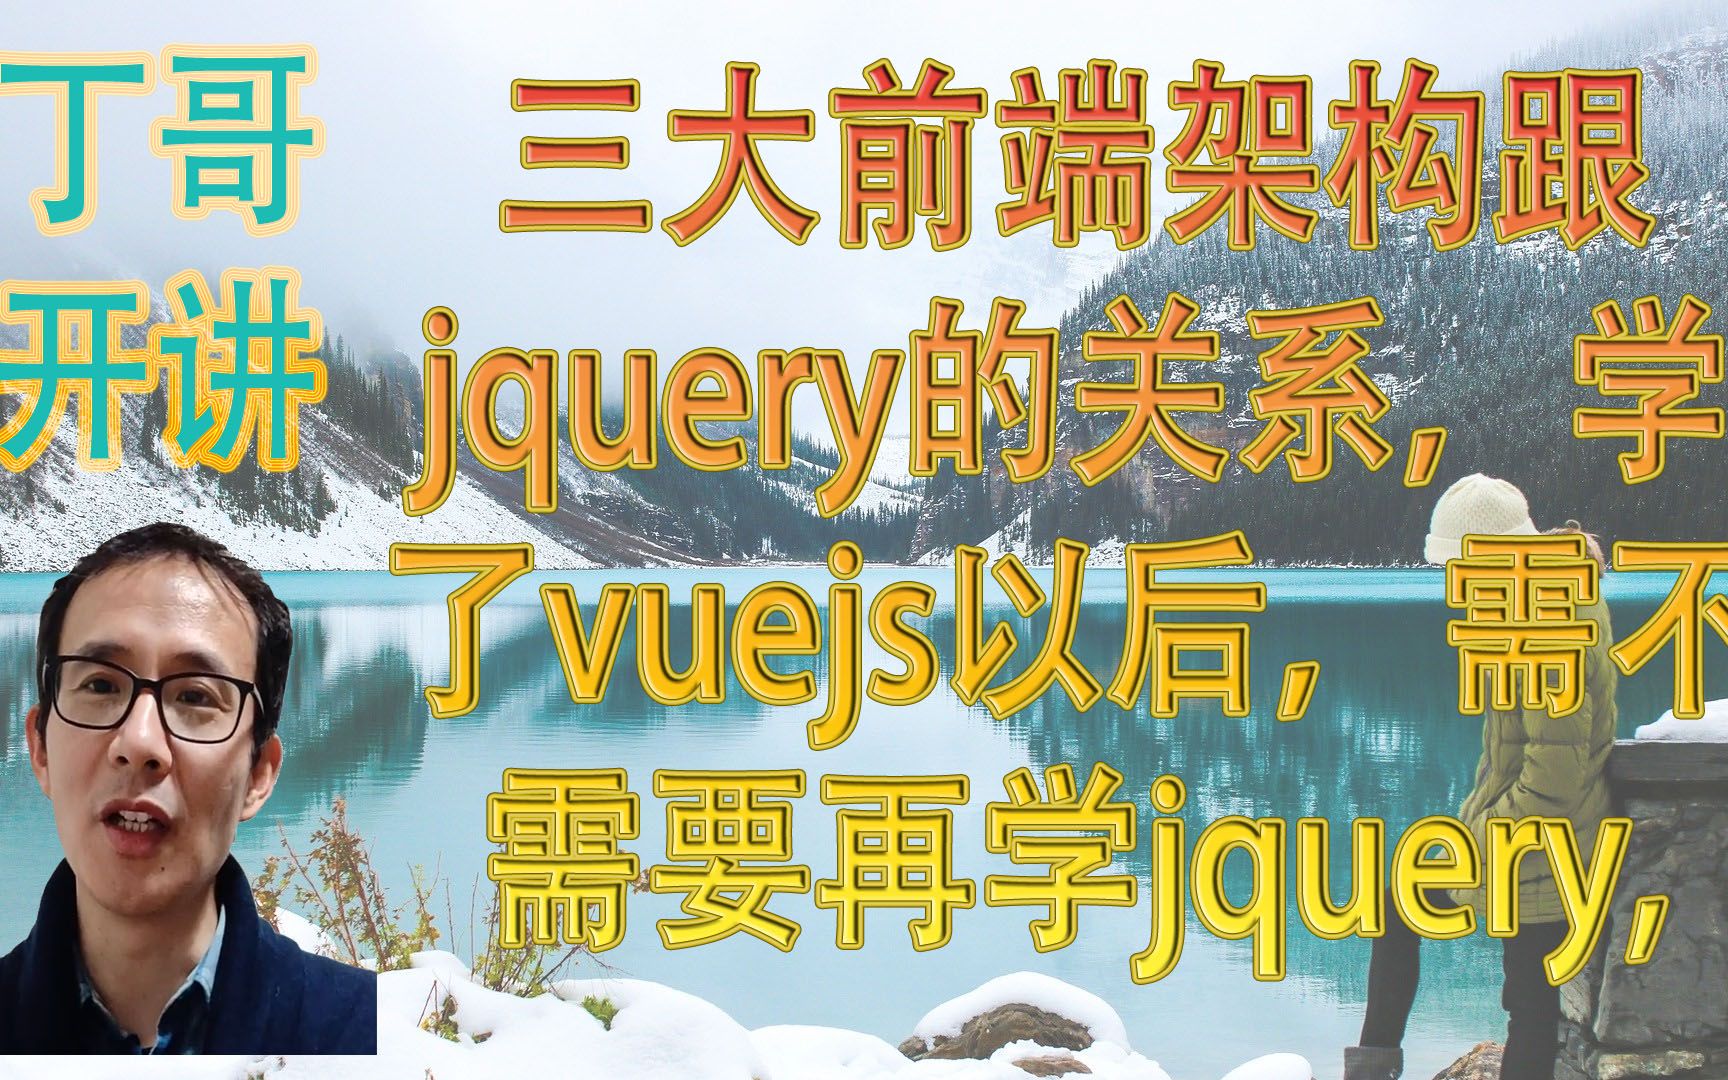 三大前端架构跟jquery的关系，学了vuejs以后，需不需要再学jquery, vue能不能完全替代jquery？